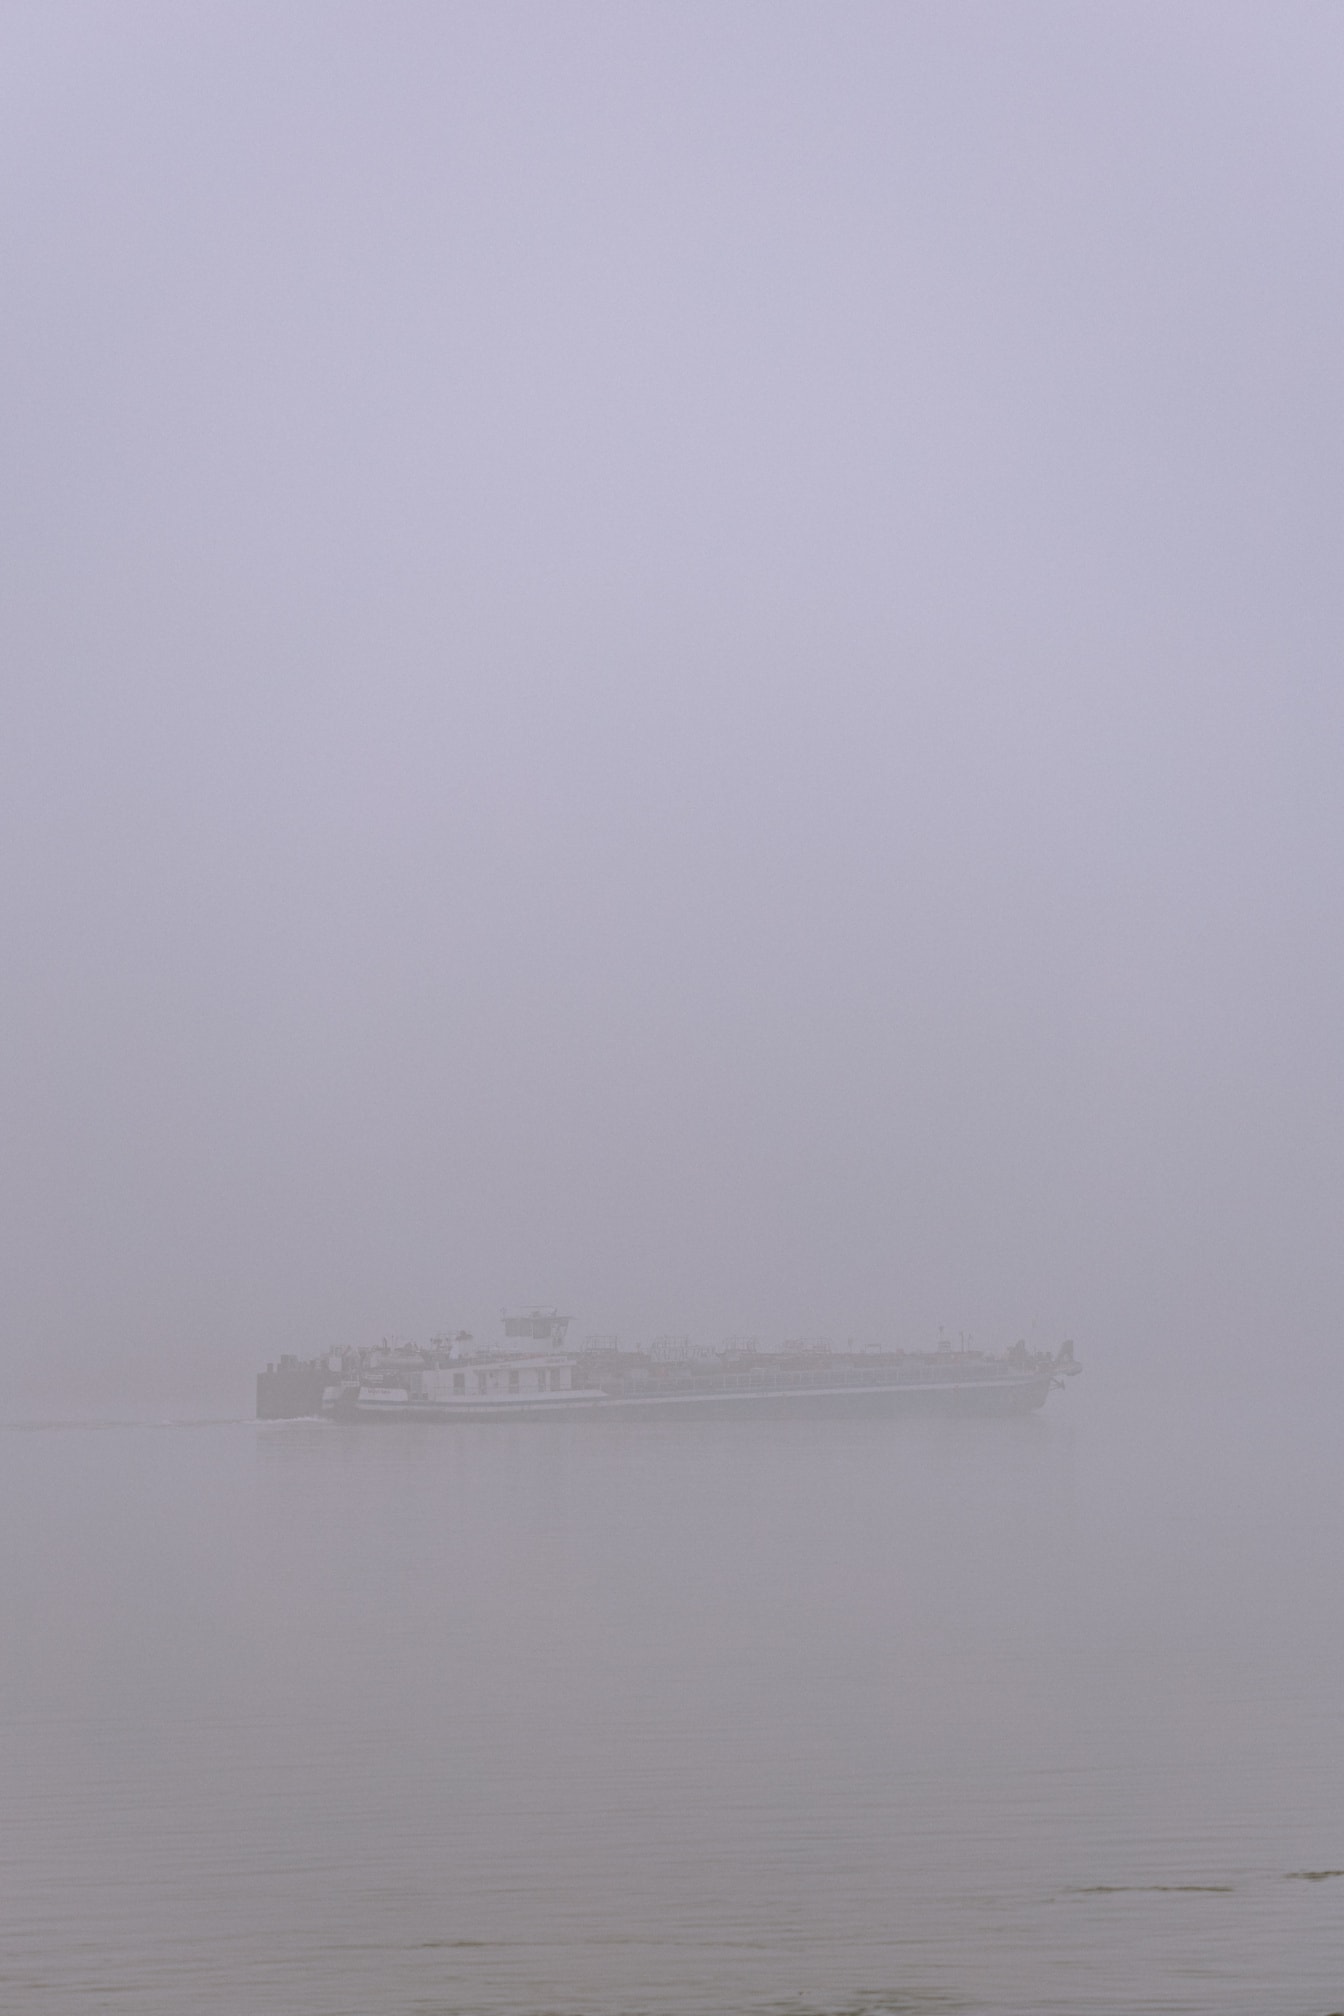 매우 짙은 안개 속에서 강에 바지선 선박